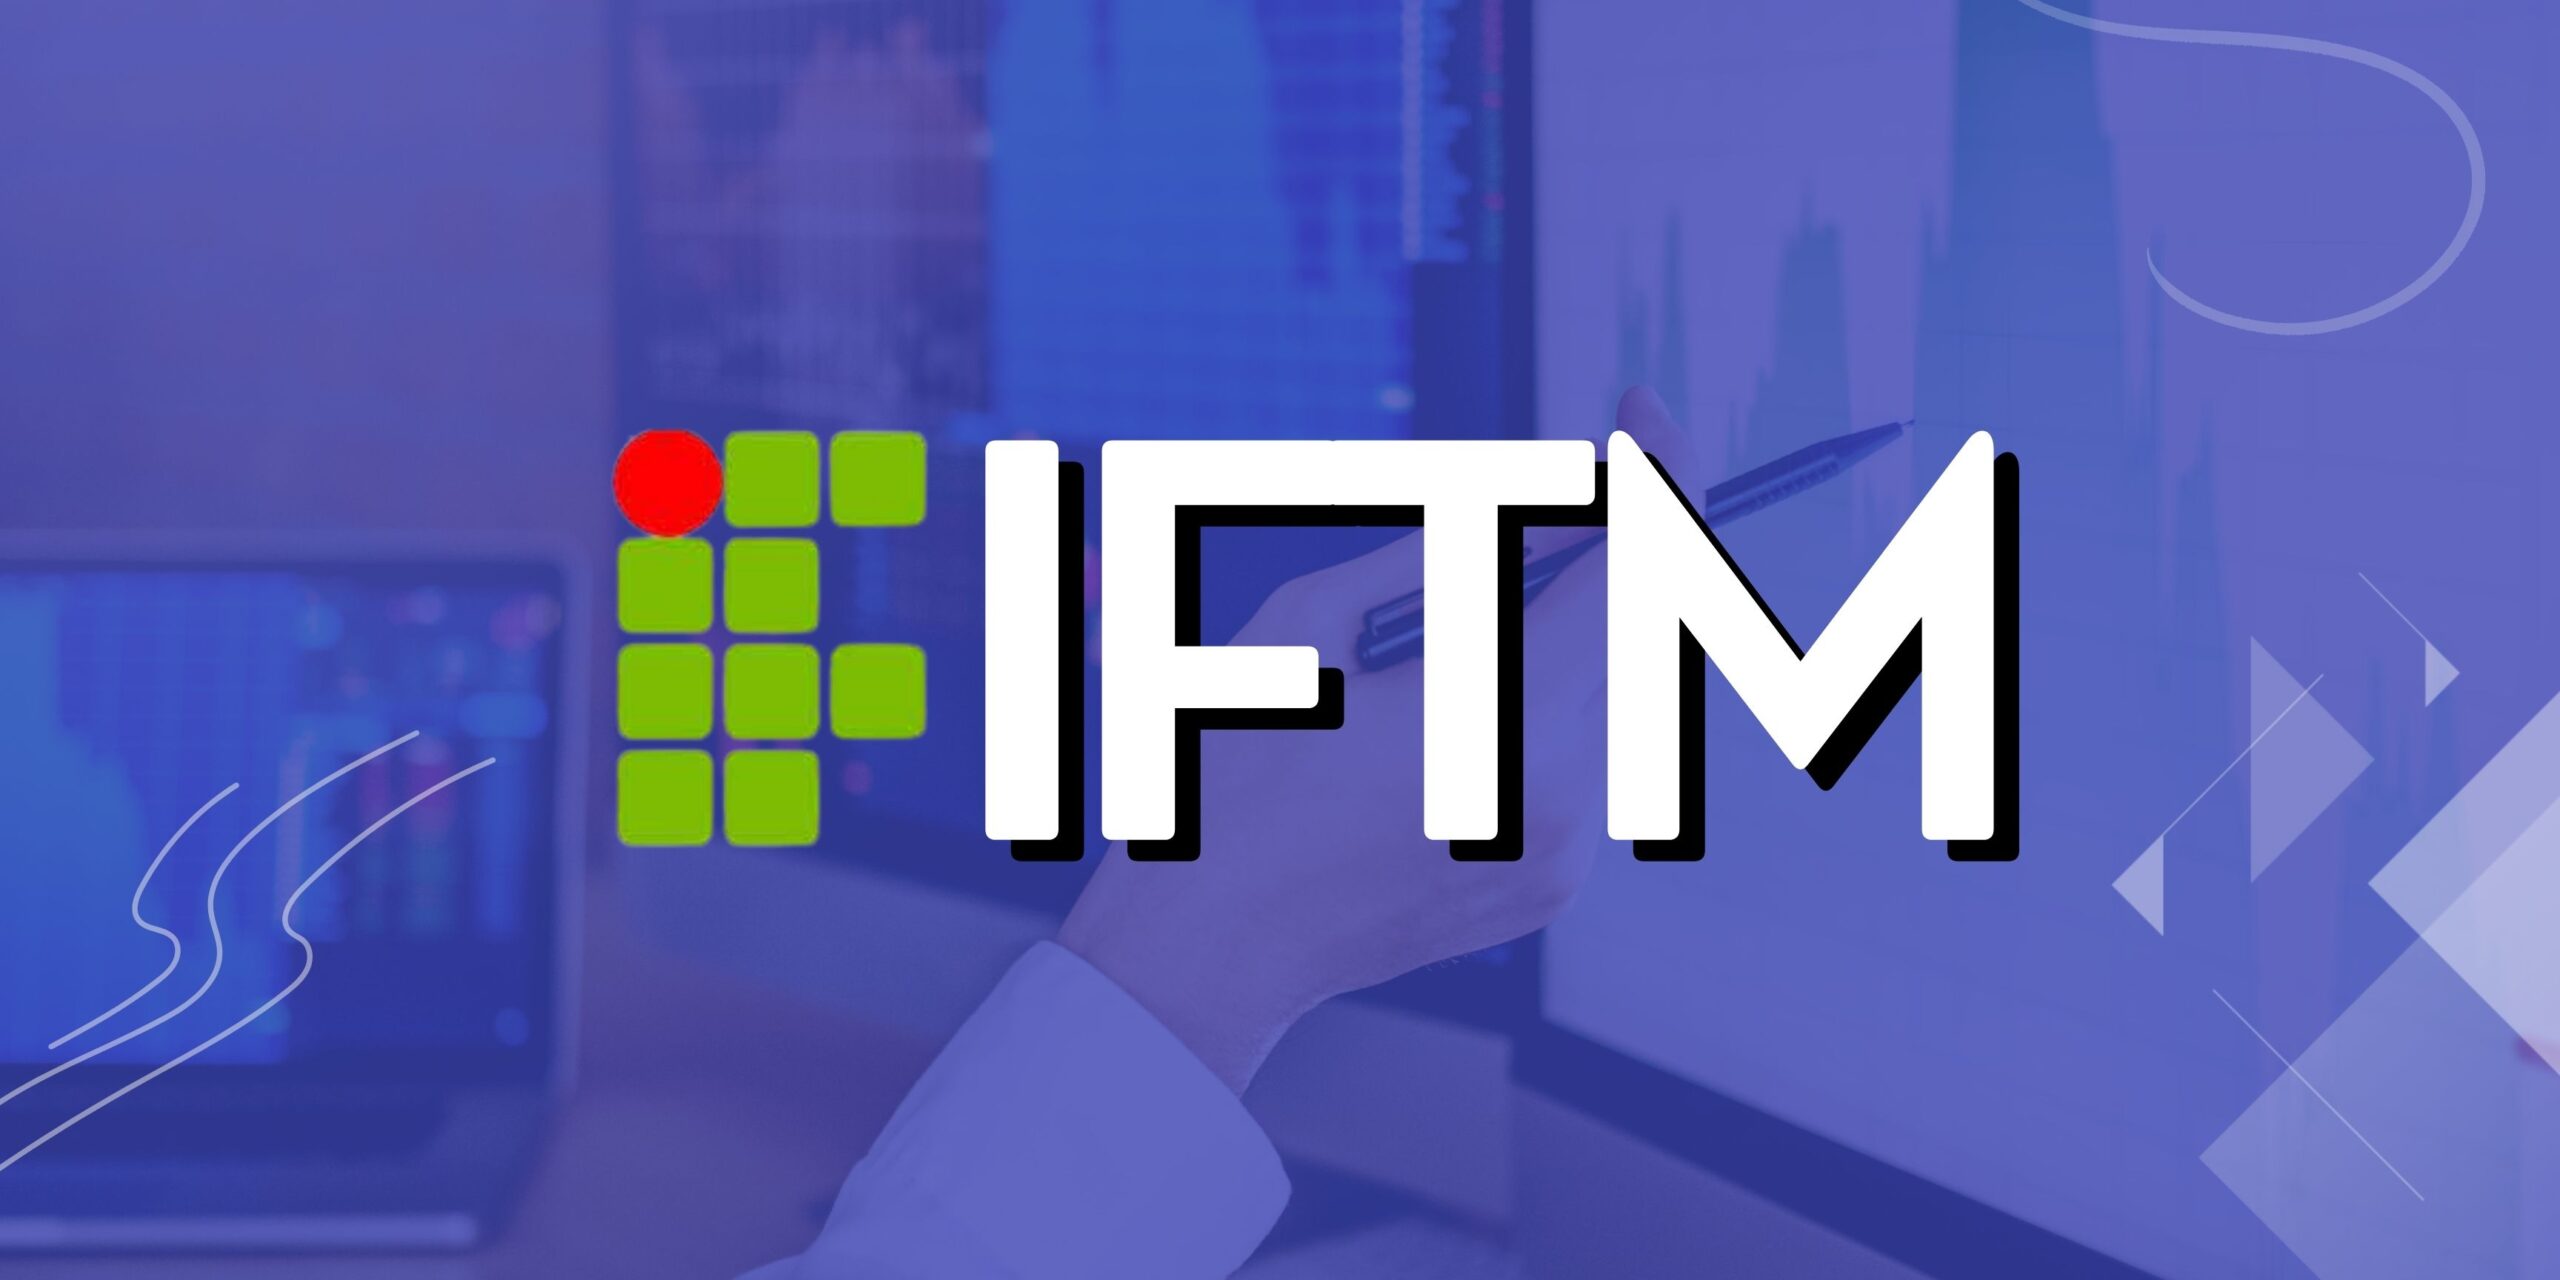 IFTM realiza neste domingo (11), processo seletivo para cursos